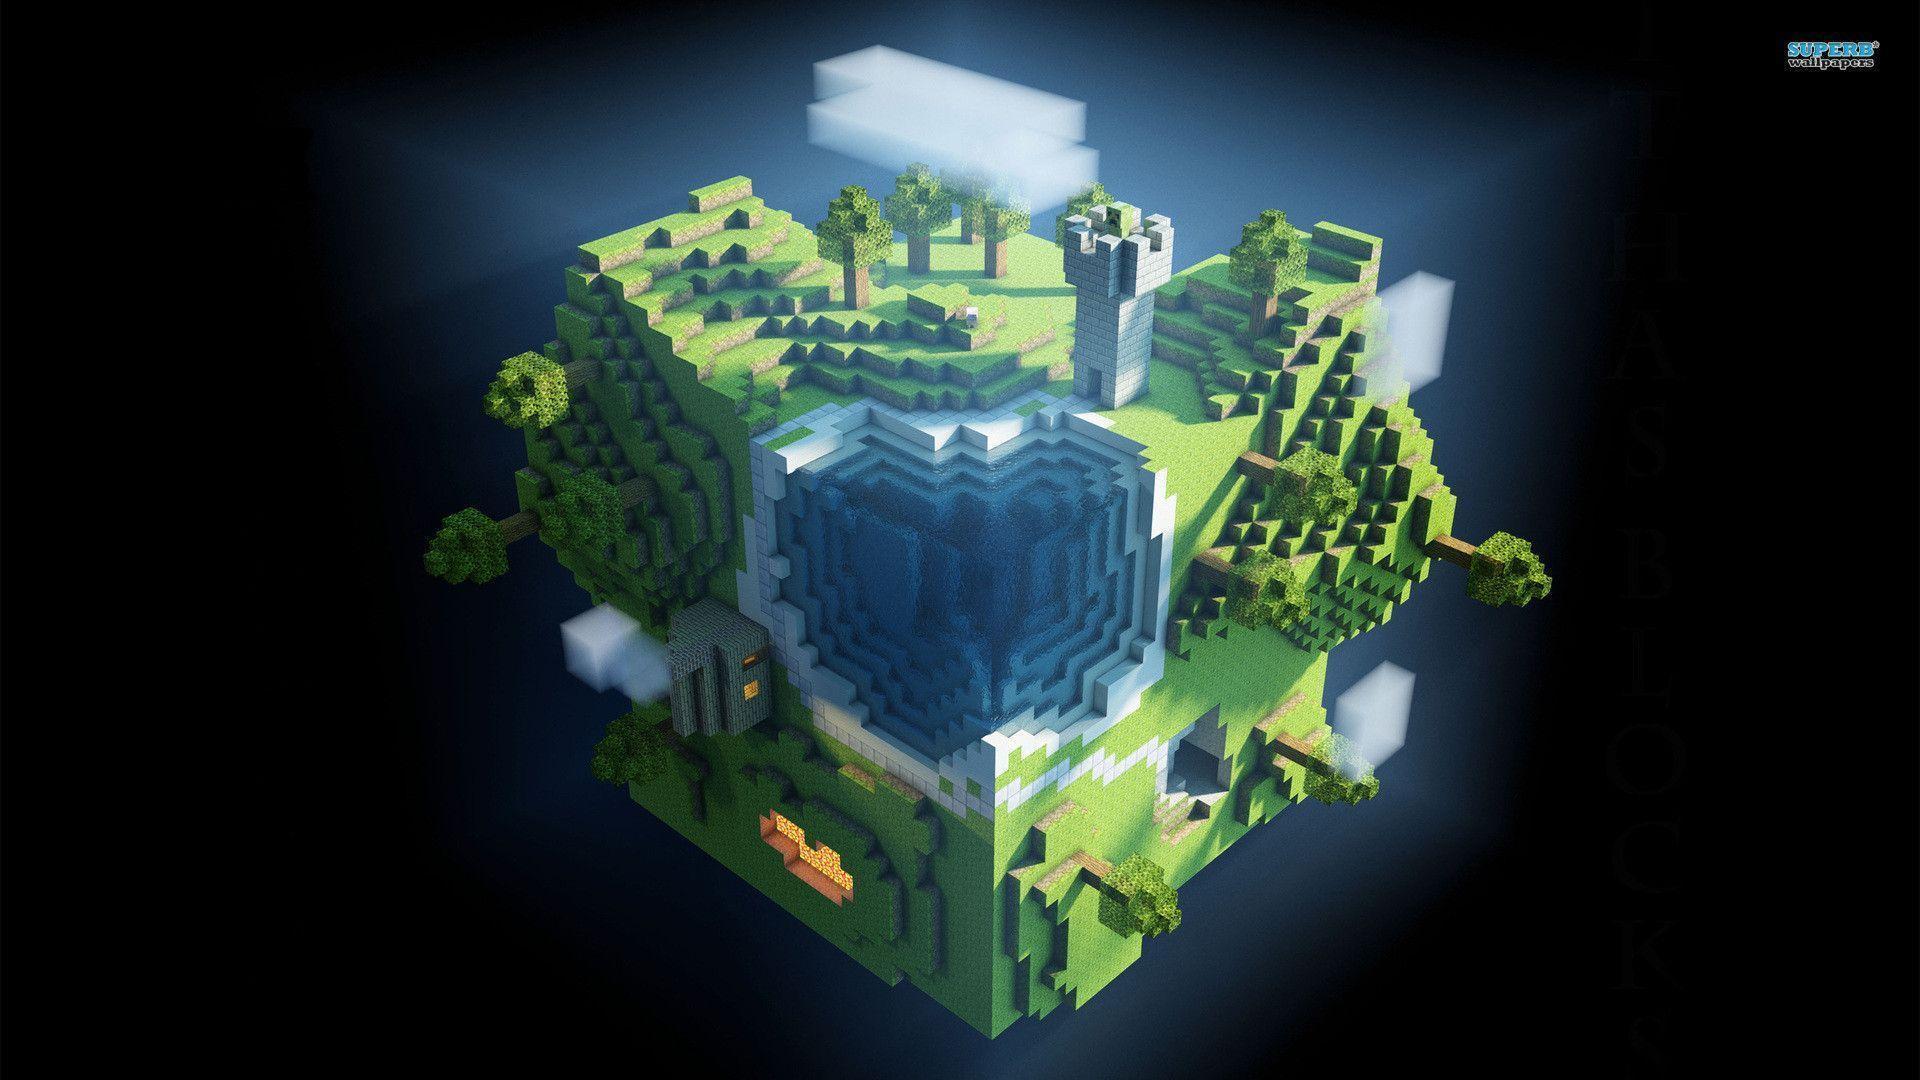 Bạn đang tìm kiếm một bức hình nền Minecraft PC đẹp để làm nền cho máy tính của mình? Không cần phải trả bất kỳ chi phí nào, chỉ cần tải nội dung chất lượng này miễn phí và sử dụng ngay! Làm việc, chơi game hoặc giải trí cùng hình nền Minecraft PC độc đáo và hấp dẫn. 